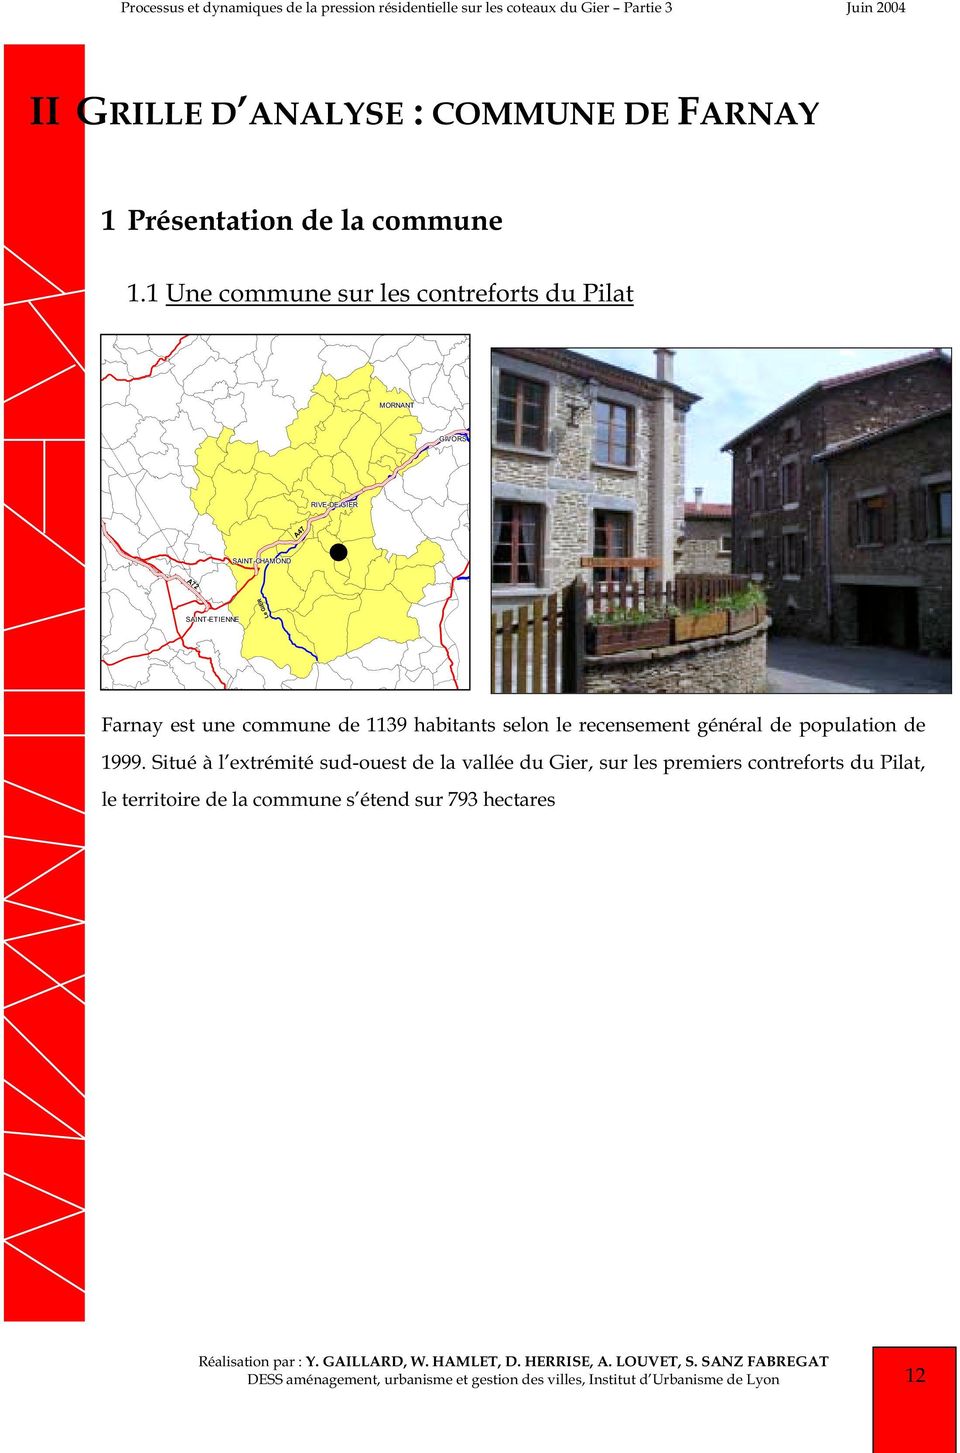 1 Une commune sur les contreforts du Pilat MORNANT GIVORS RIVE-DE-GIER A47 SAINT-CHAMOND Le GIER SAINT-ETIENNE Farnay est une commune de 1139